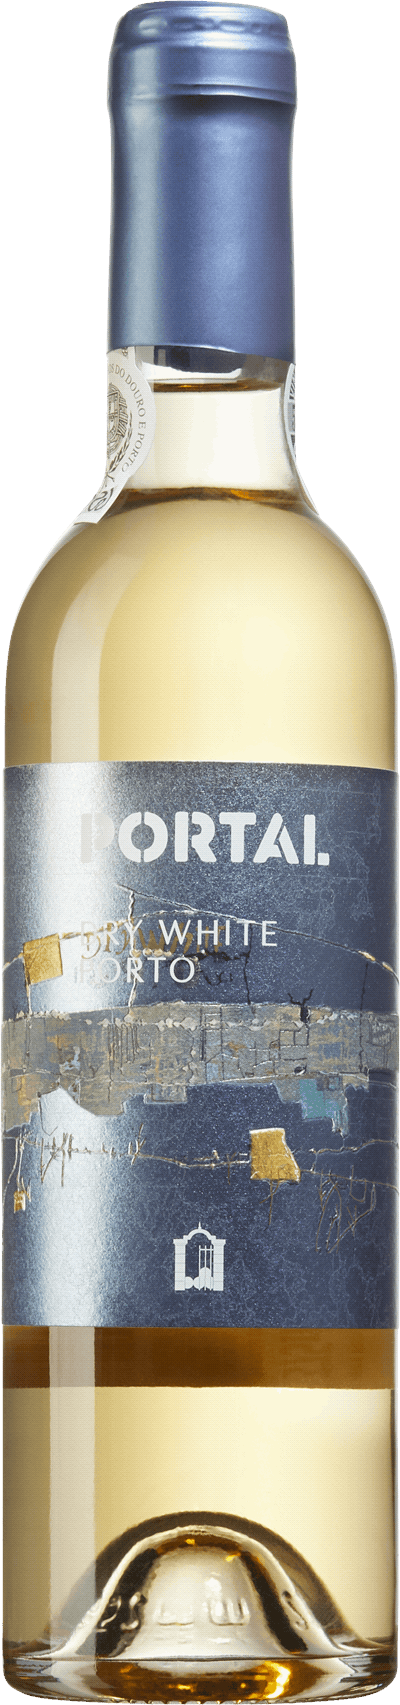 Portal Dry White Porto